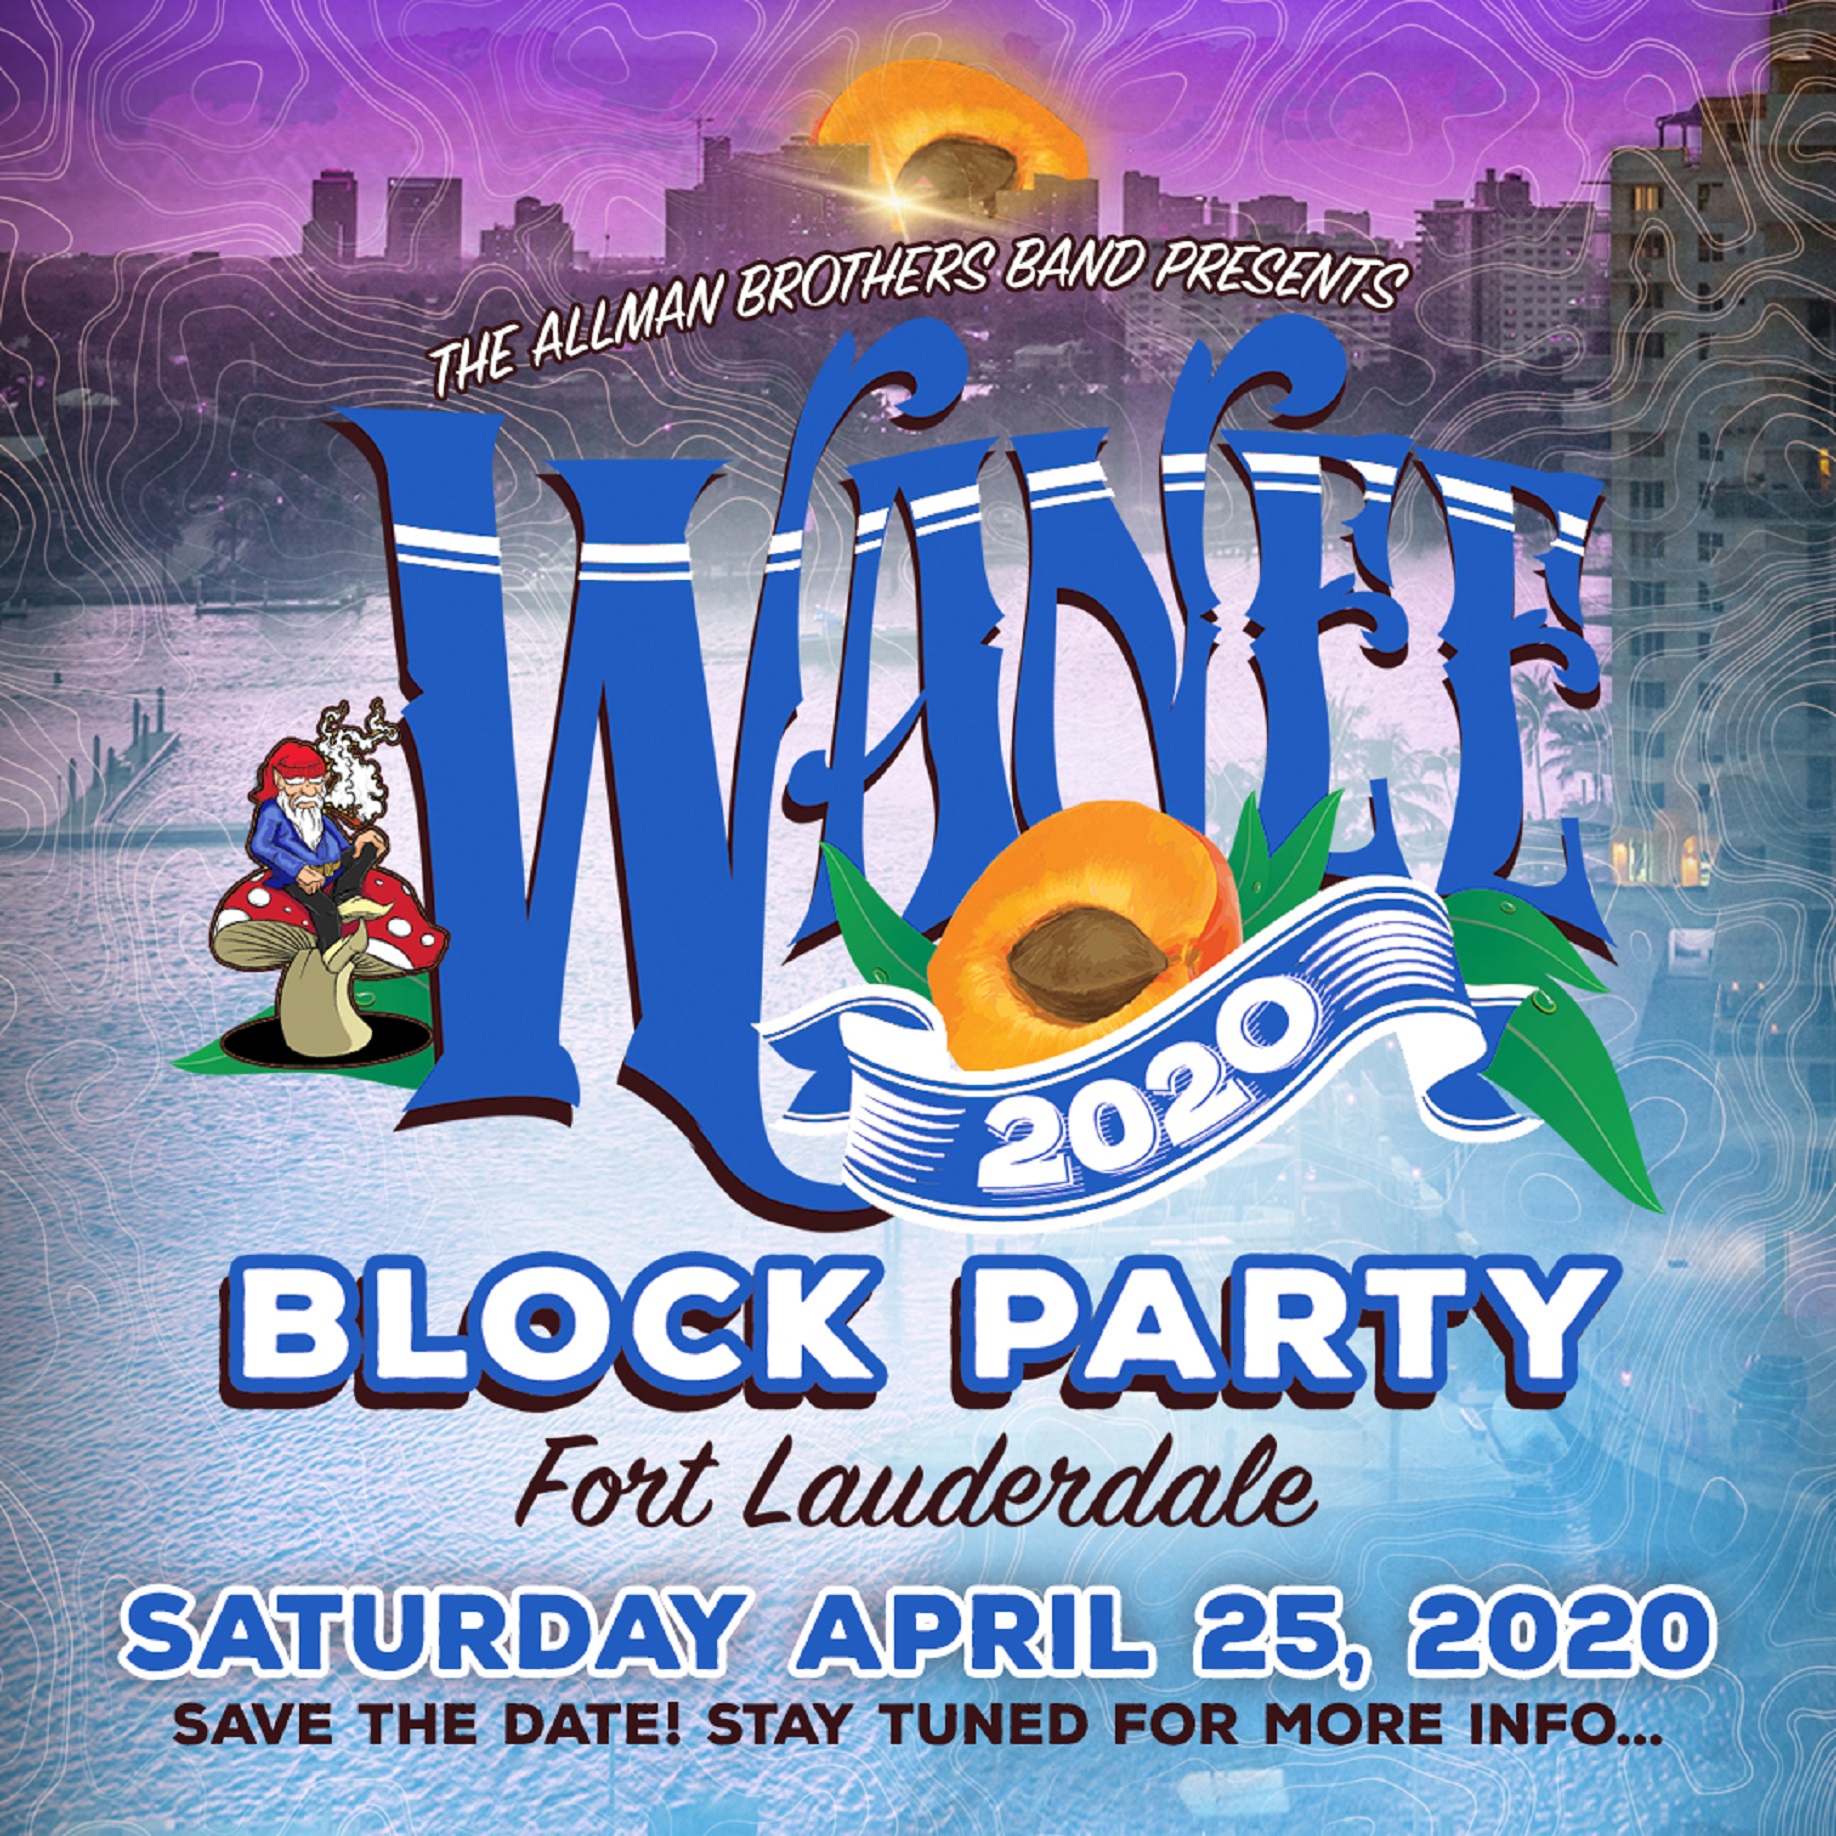 WANEE RETURNS TO S FL SATURDAY, APRIL 25TH, 2020!